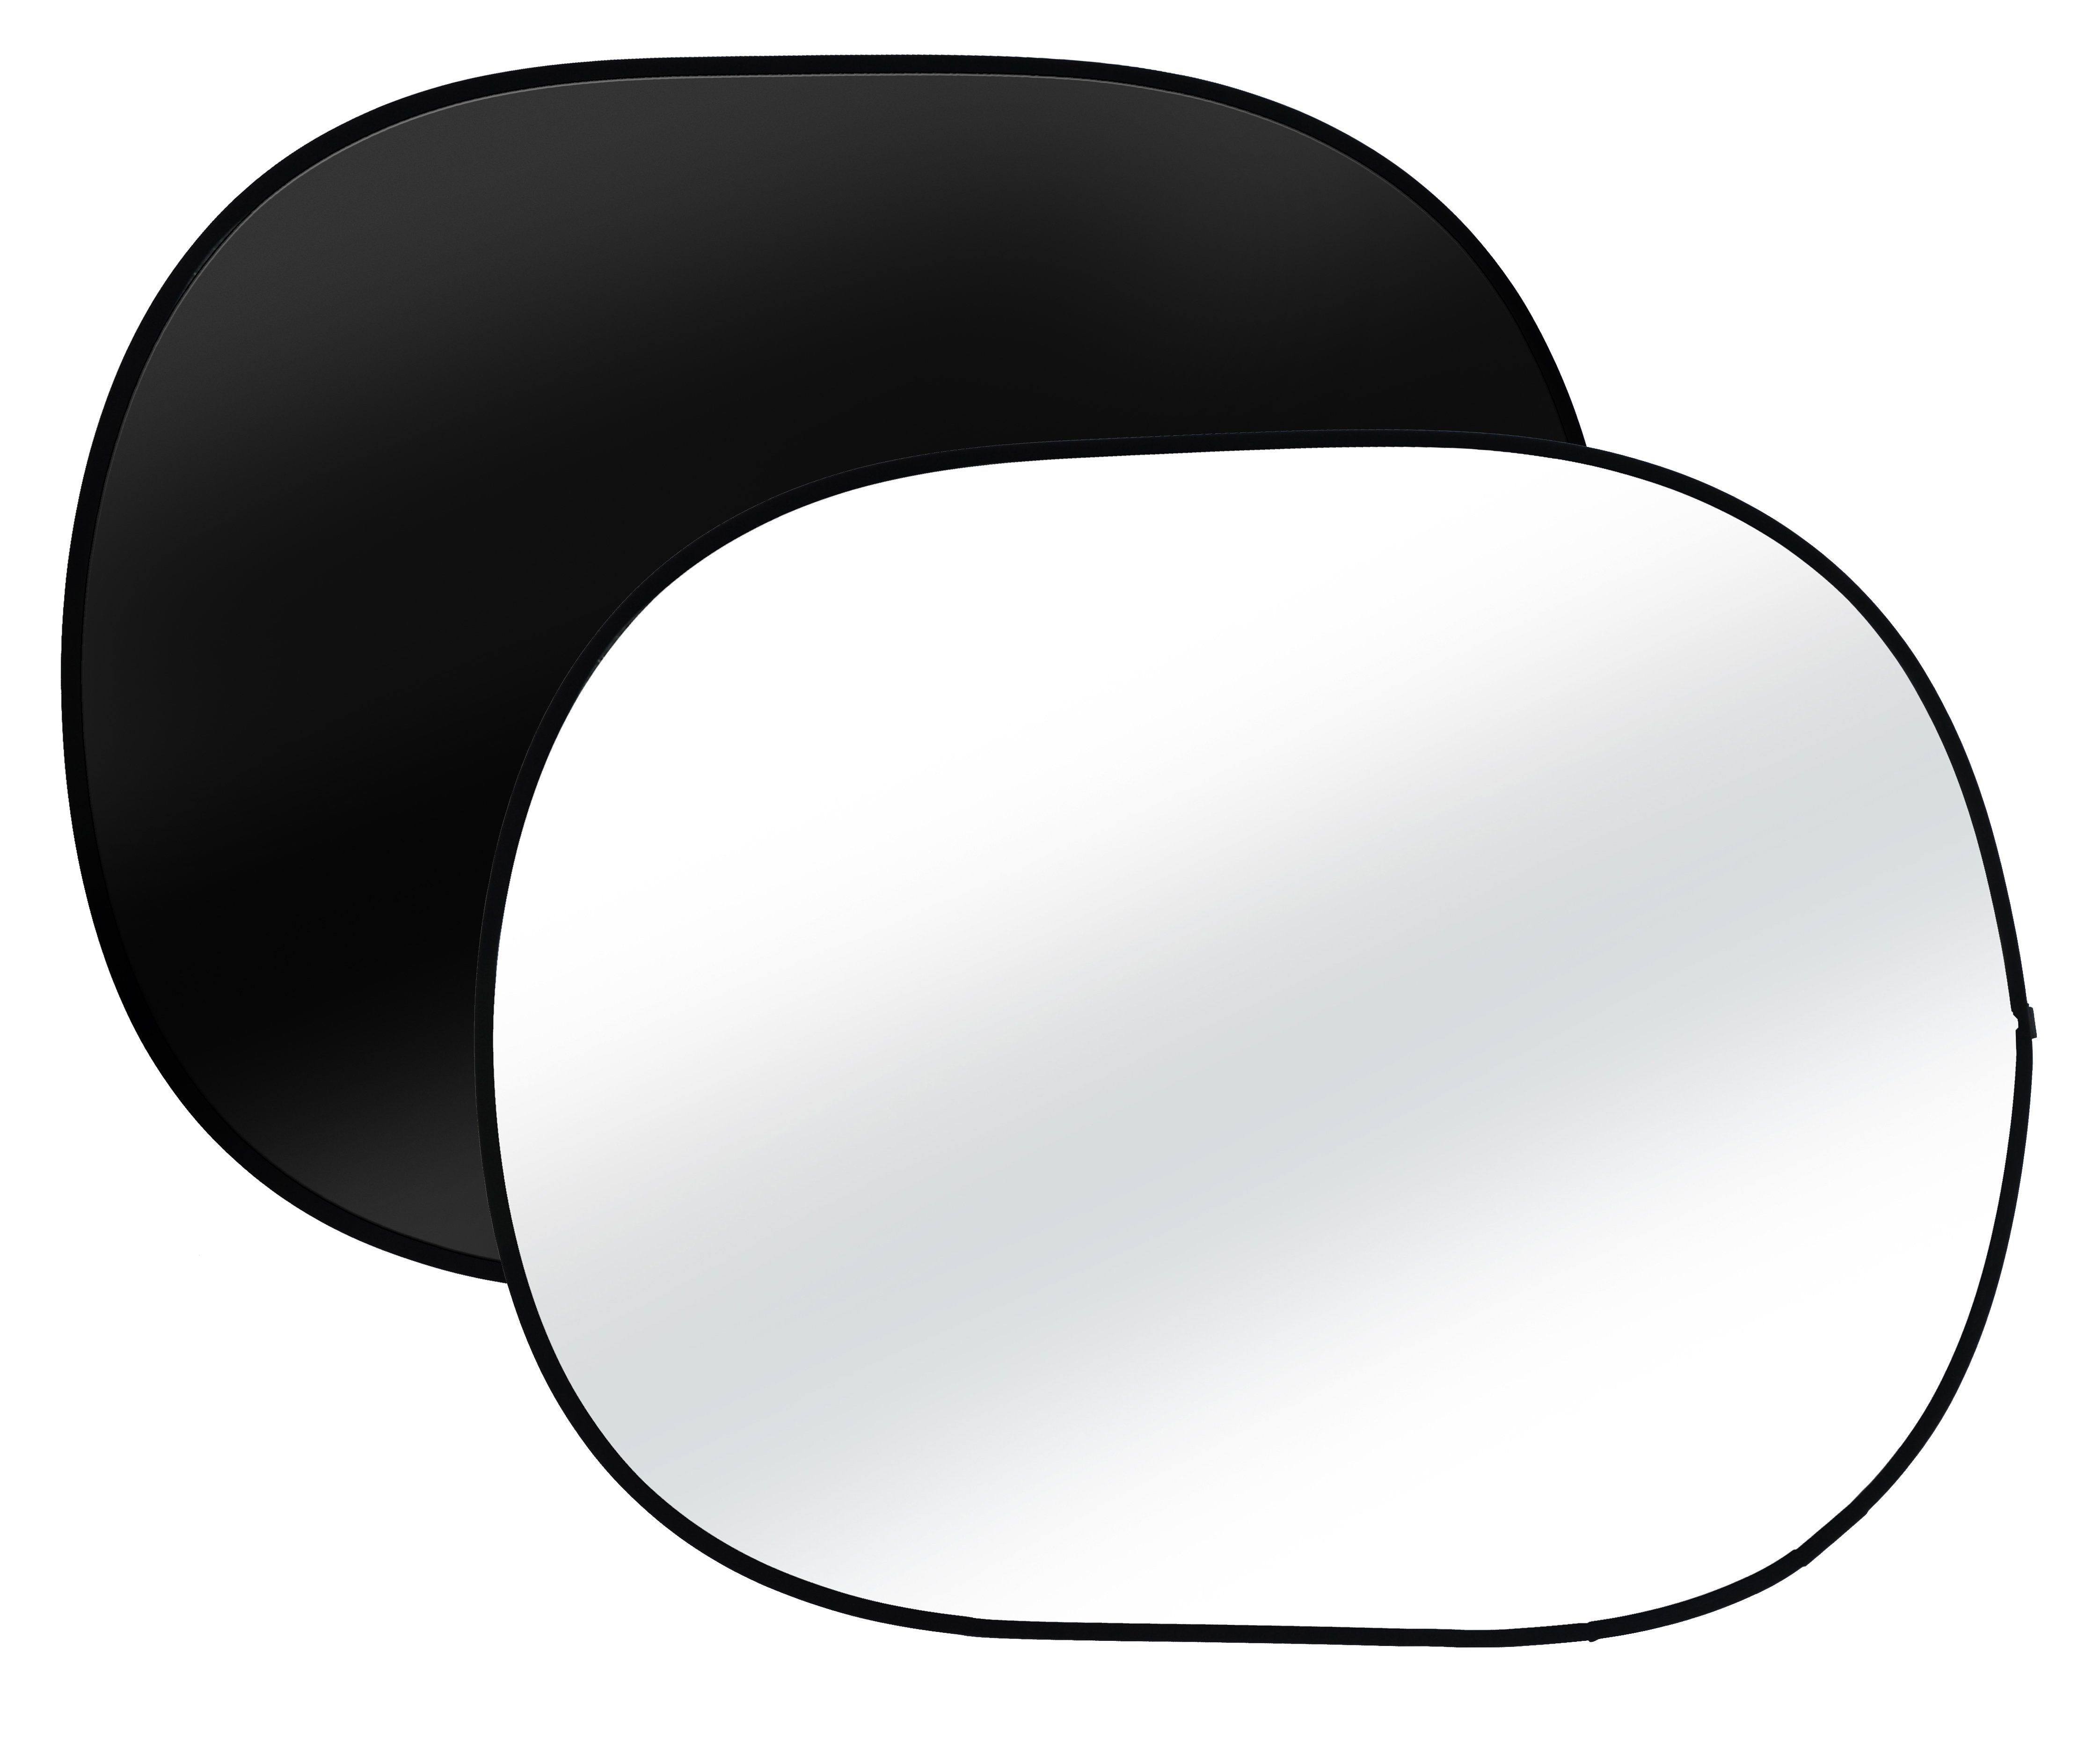 BRESSER 150x200cm Faltbarer Hintergrund BR-3 2-seitig Falthintergrund schwarz/weiß